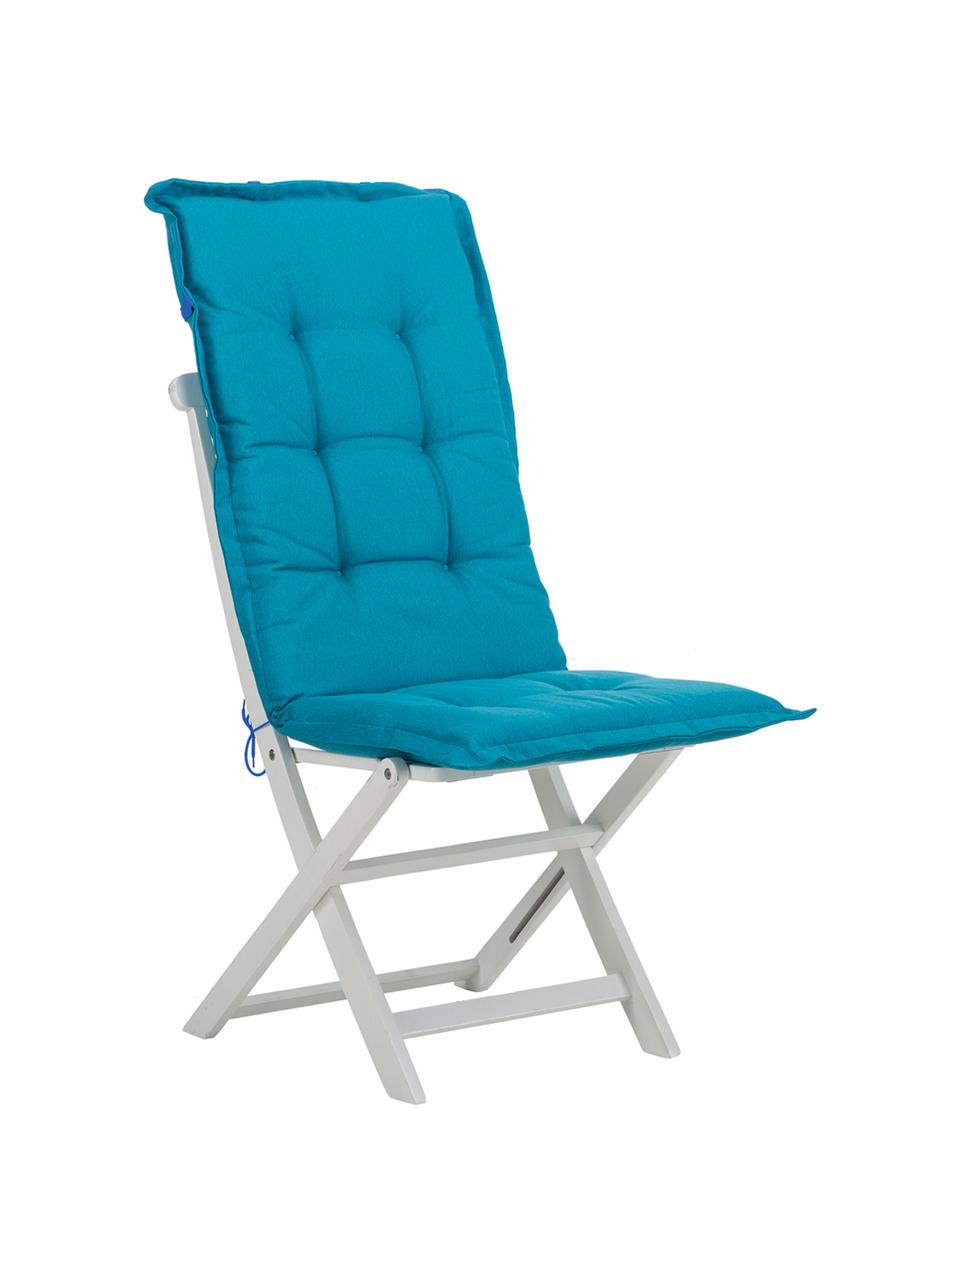 Cuscino sedia con schienale alto Panama, Rivestimento: 50% cotone, 50% poliester, Blu turchese, Larg. 50 x Lung. 123 cm